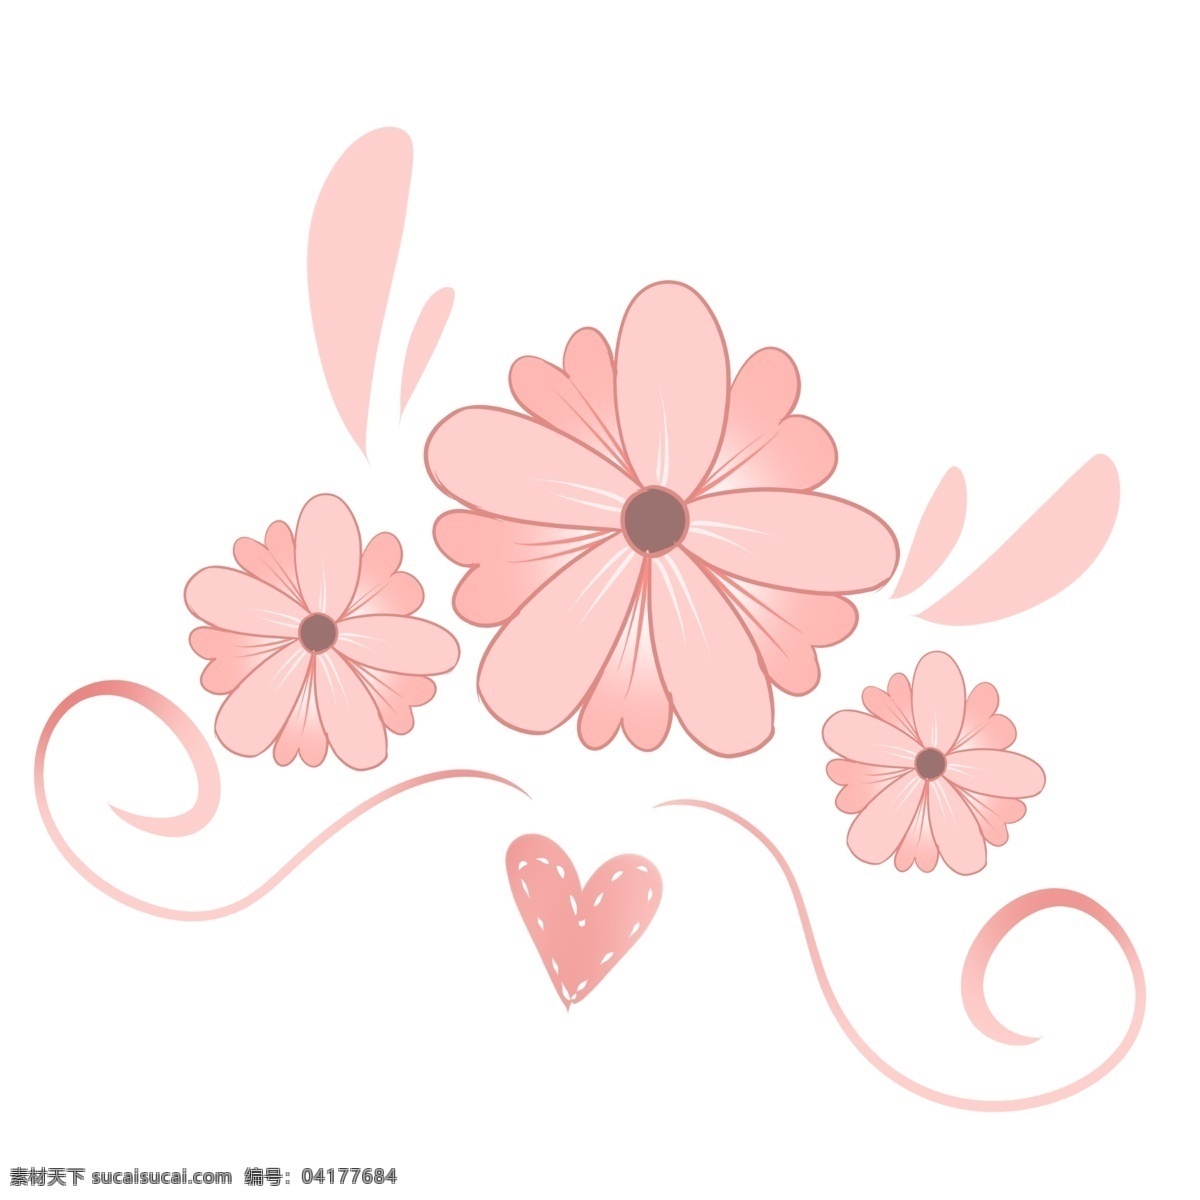 双层 花蕊 可爱 朵朵 生机勃勃 充满生气 粉色花蕊 萌萌 可爱设计 创意设计 少女装扮 手绘 小清新